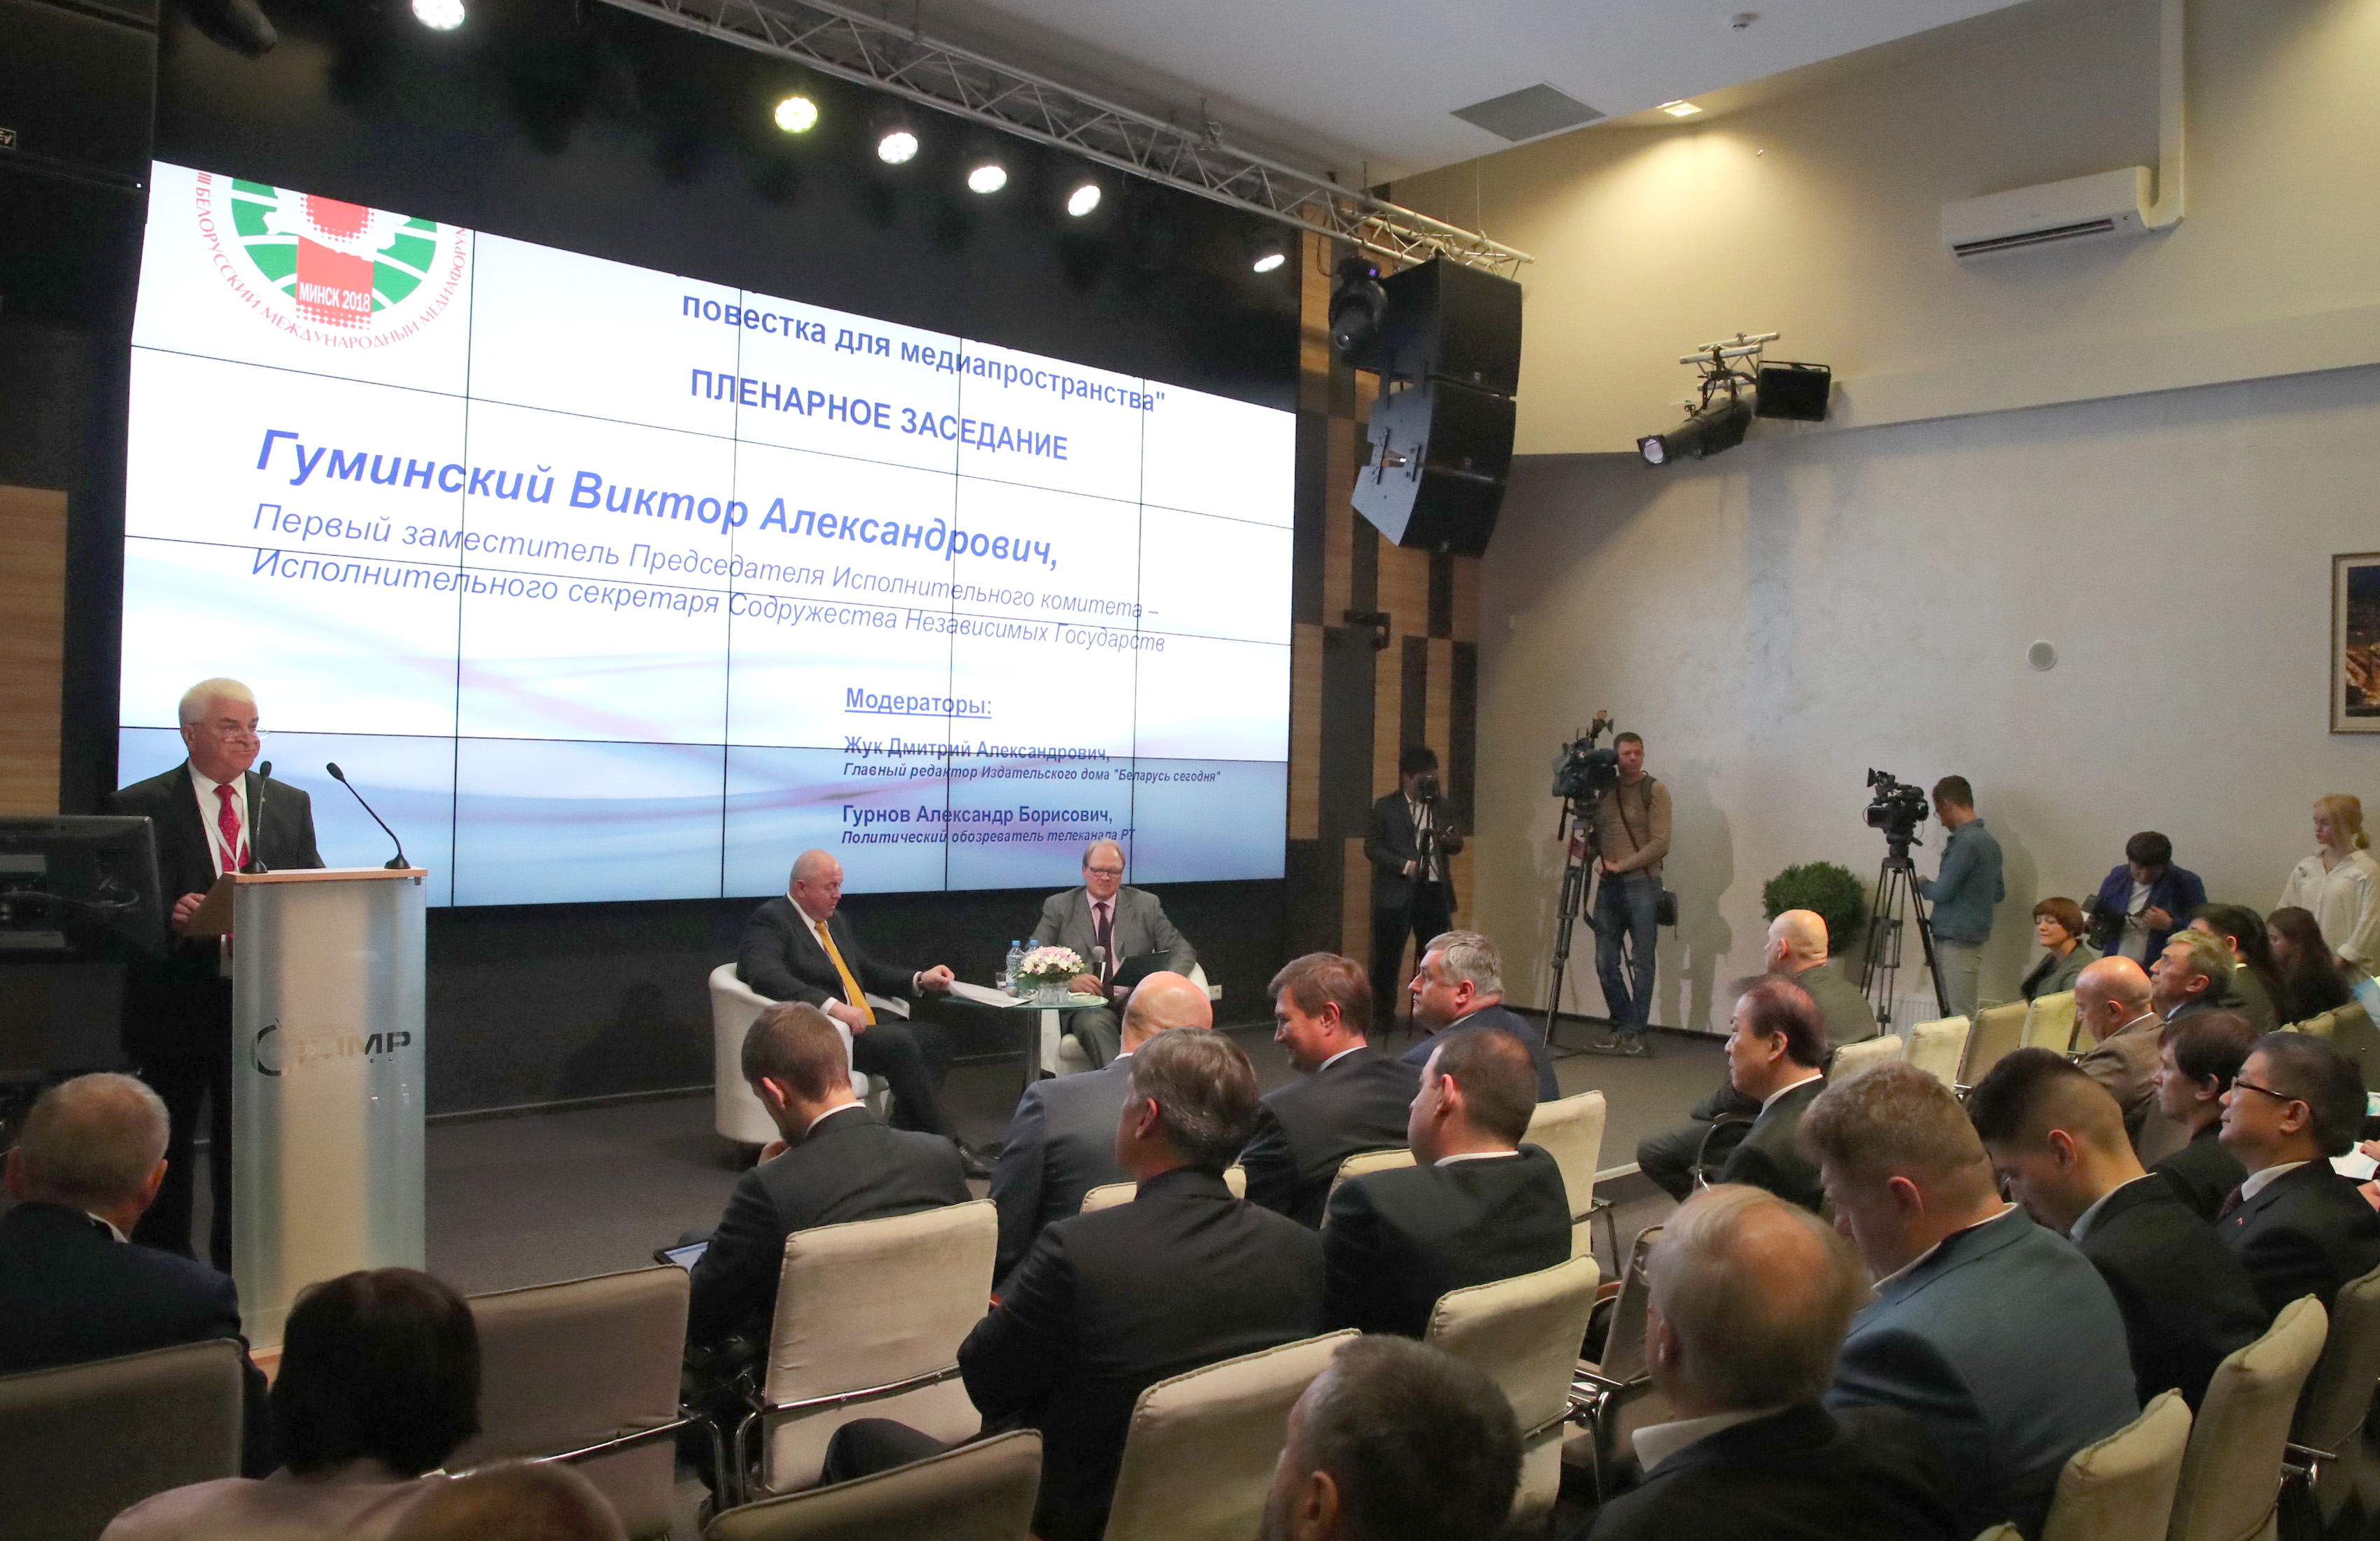   В Минске открылся Белорусский международный медиафорум